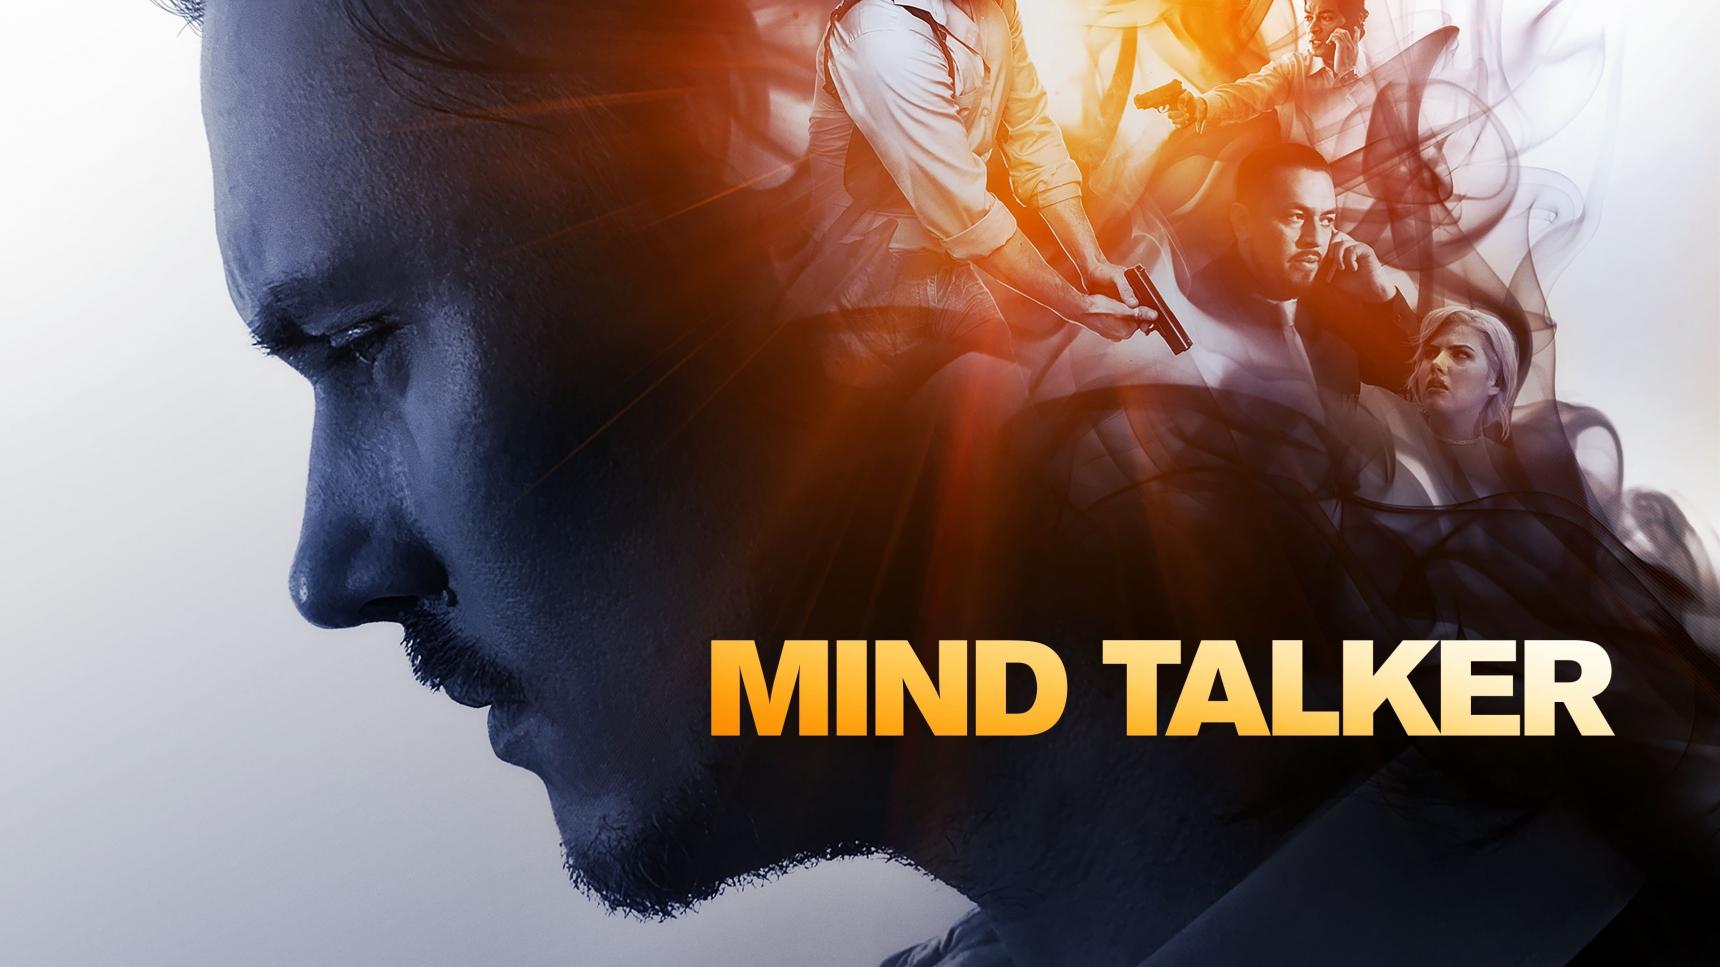 Fondo de pantalla de la película Mind Talker en CUEVANA3 gratis